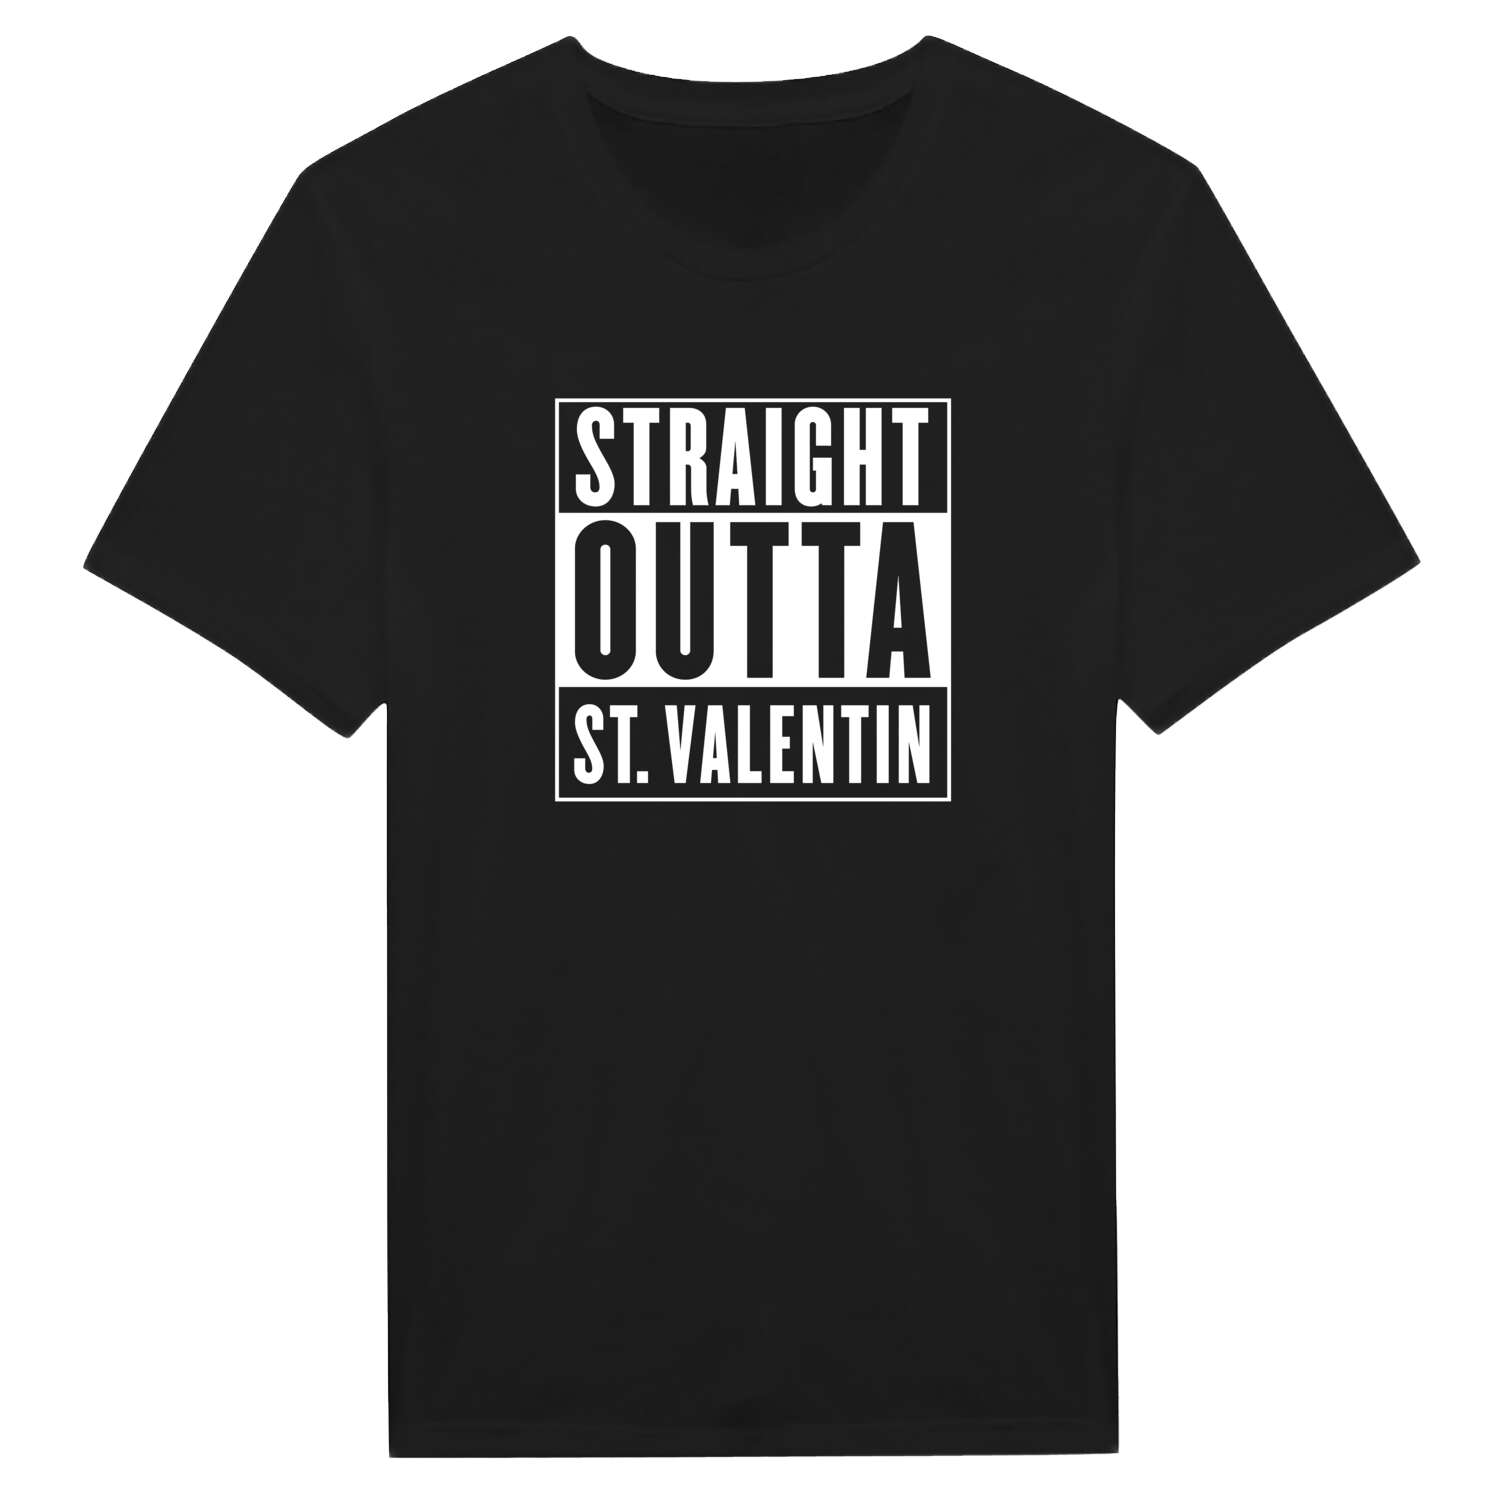 St. Valentin T-Shirt »Straight Outta«